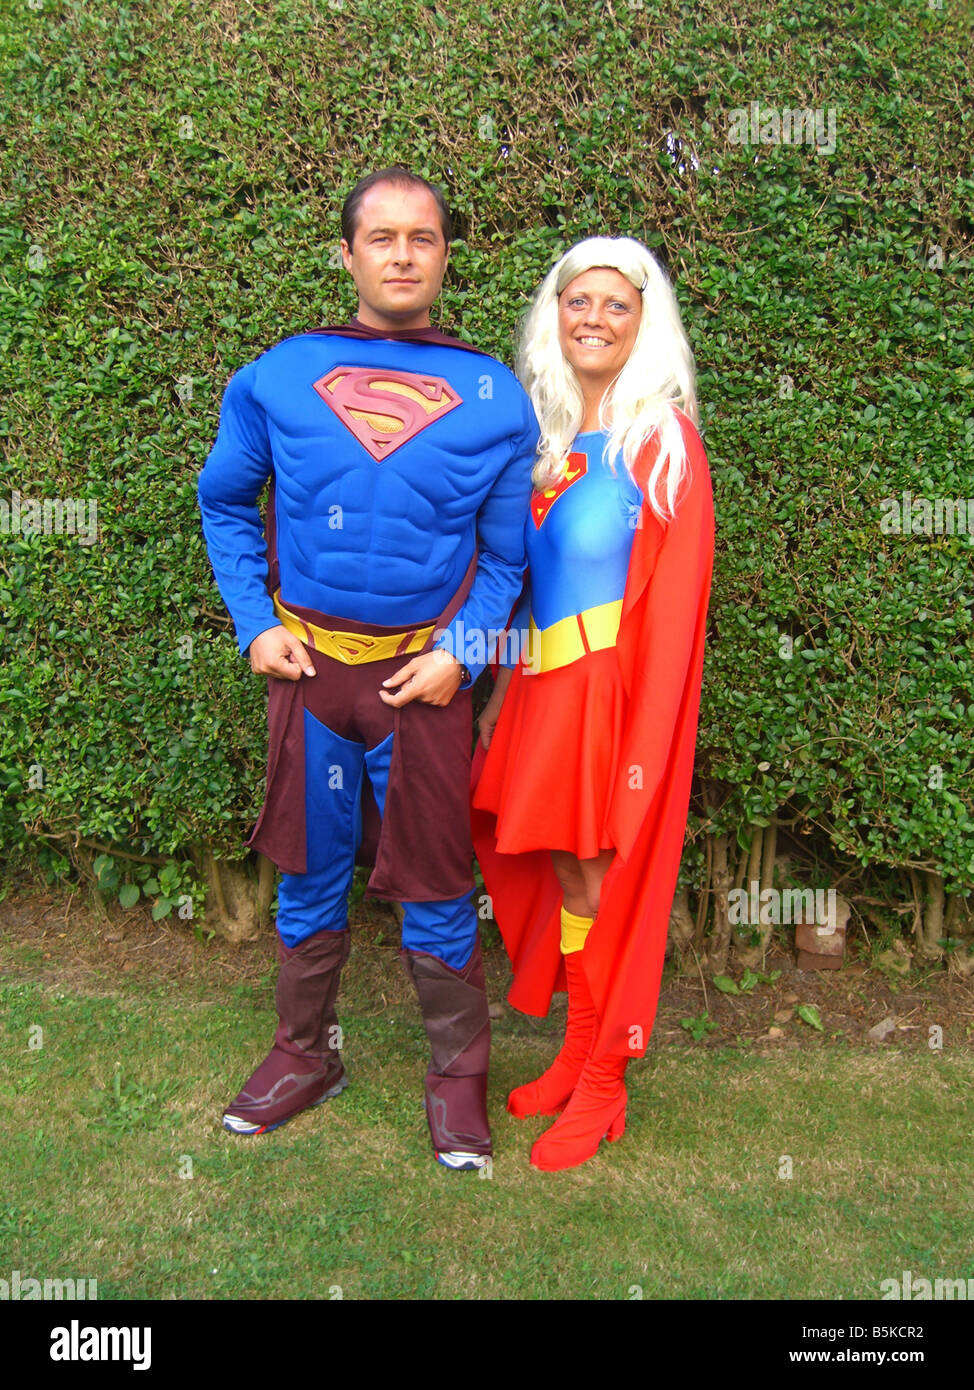 Ragazza in Costume Di Un Superman Immagine Stock - Immagine di capo, salto:  67785157